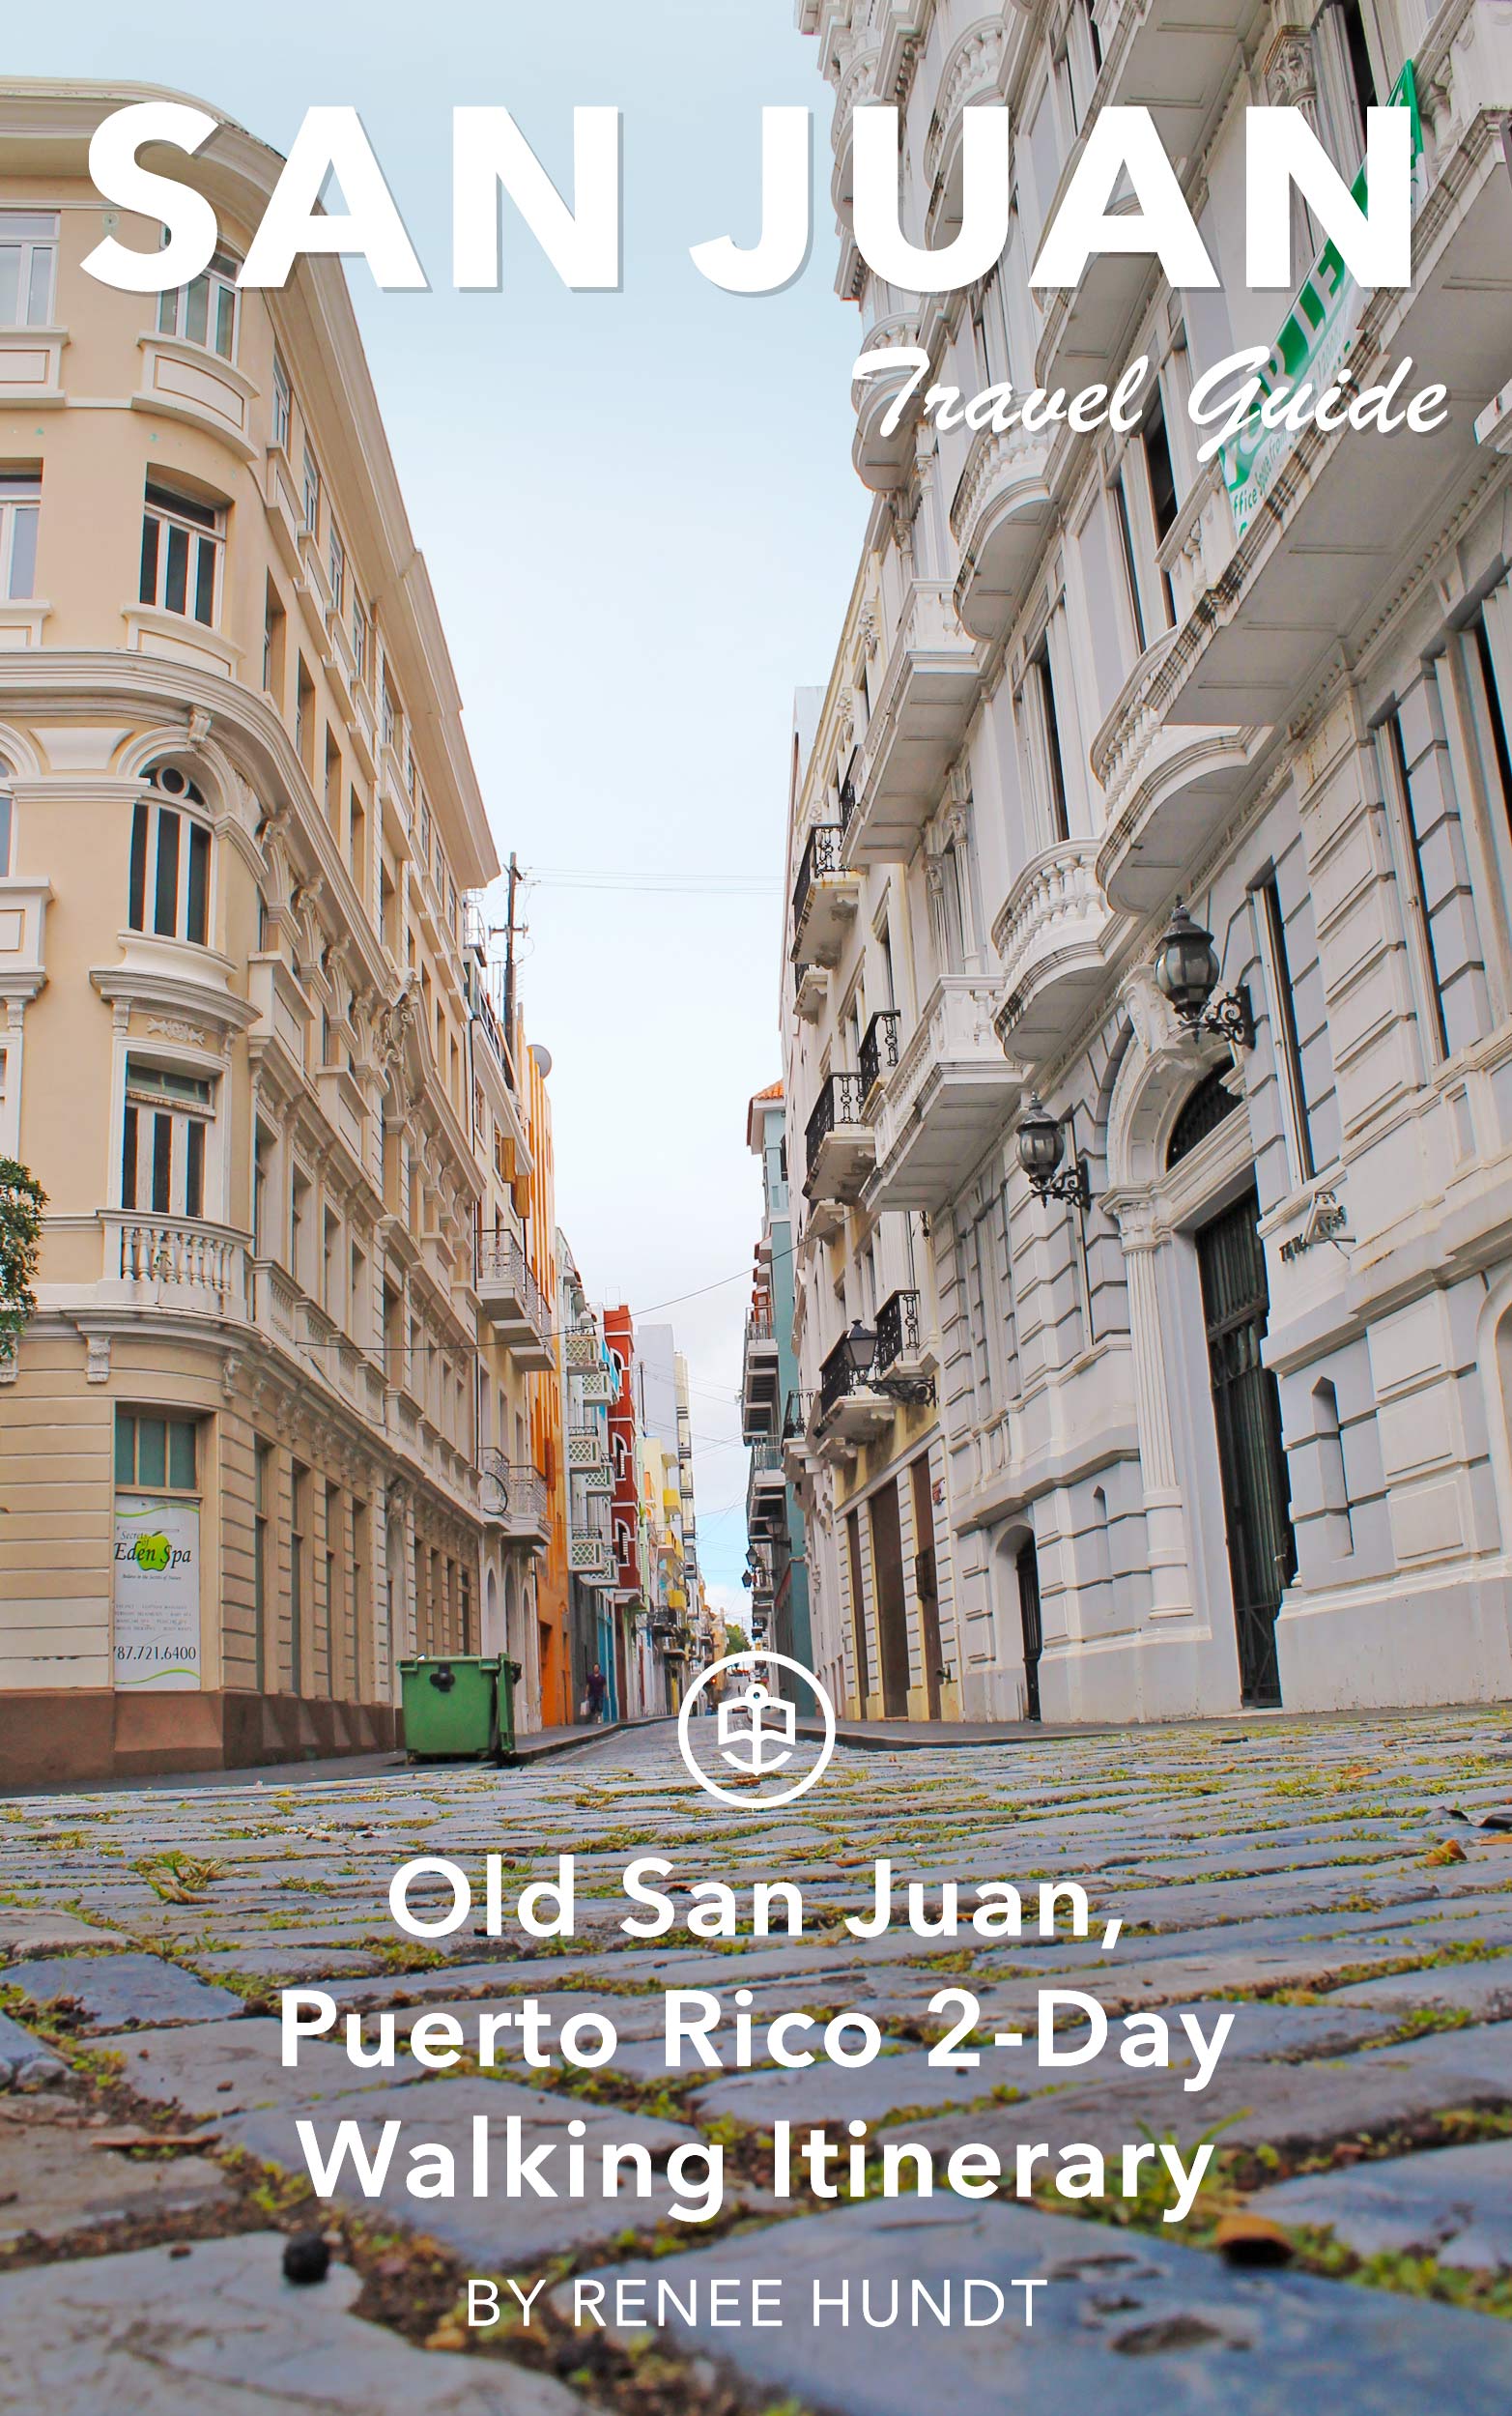 Old San Juan, Puerto Rico 2-Day Walking Itinerary